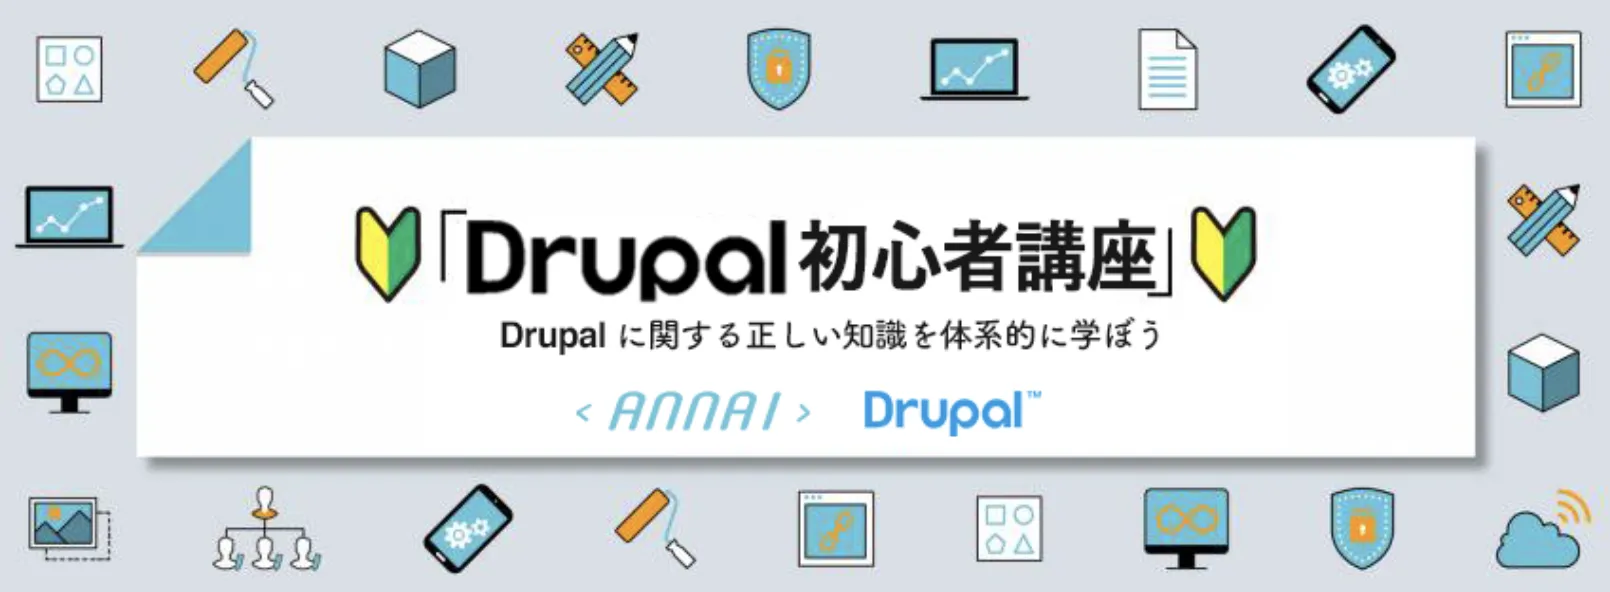 第 12 回 Drupal の多言語機能と他の CMS やサービスとの比較